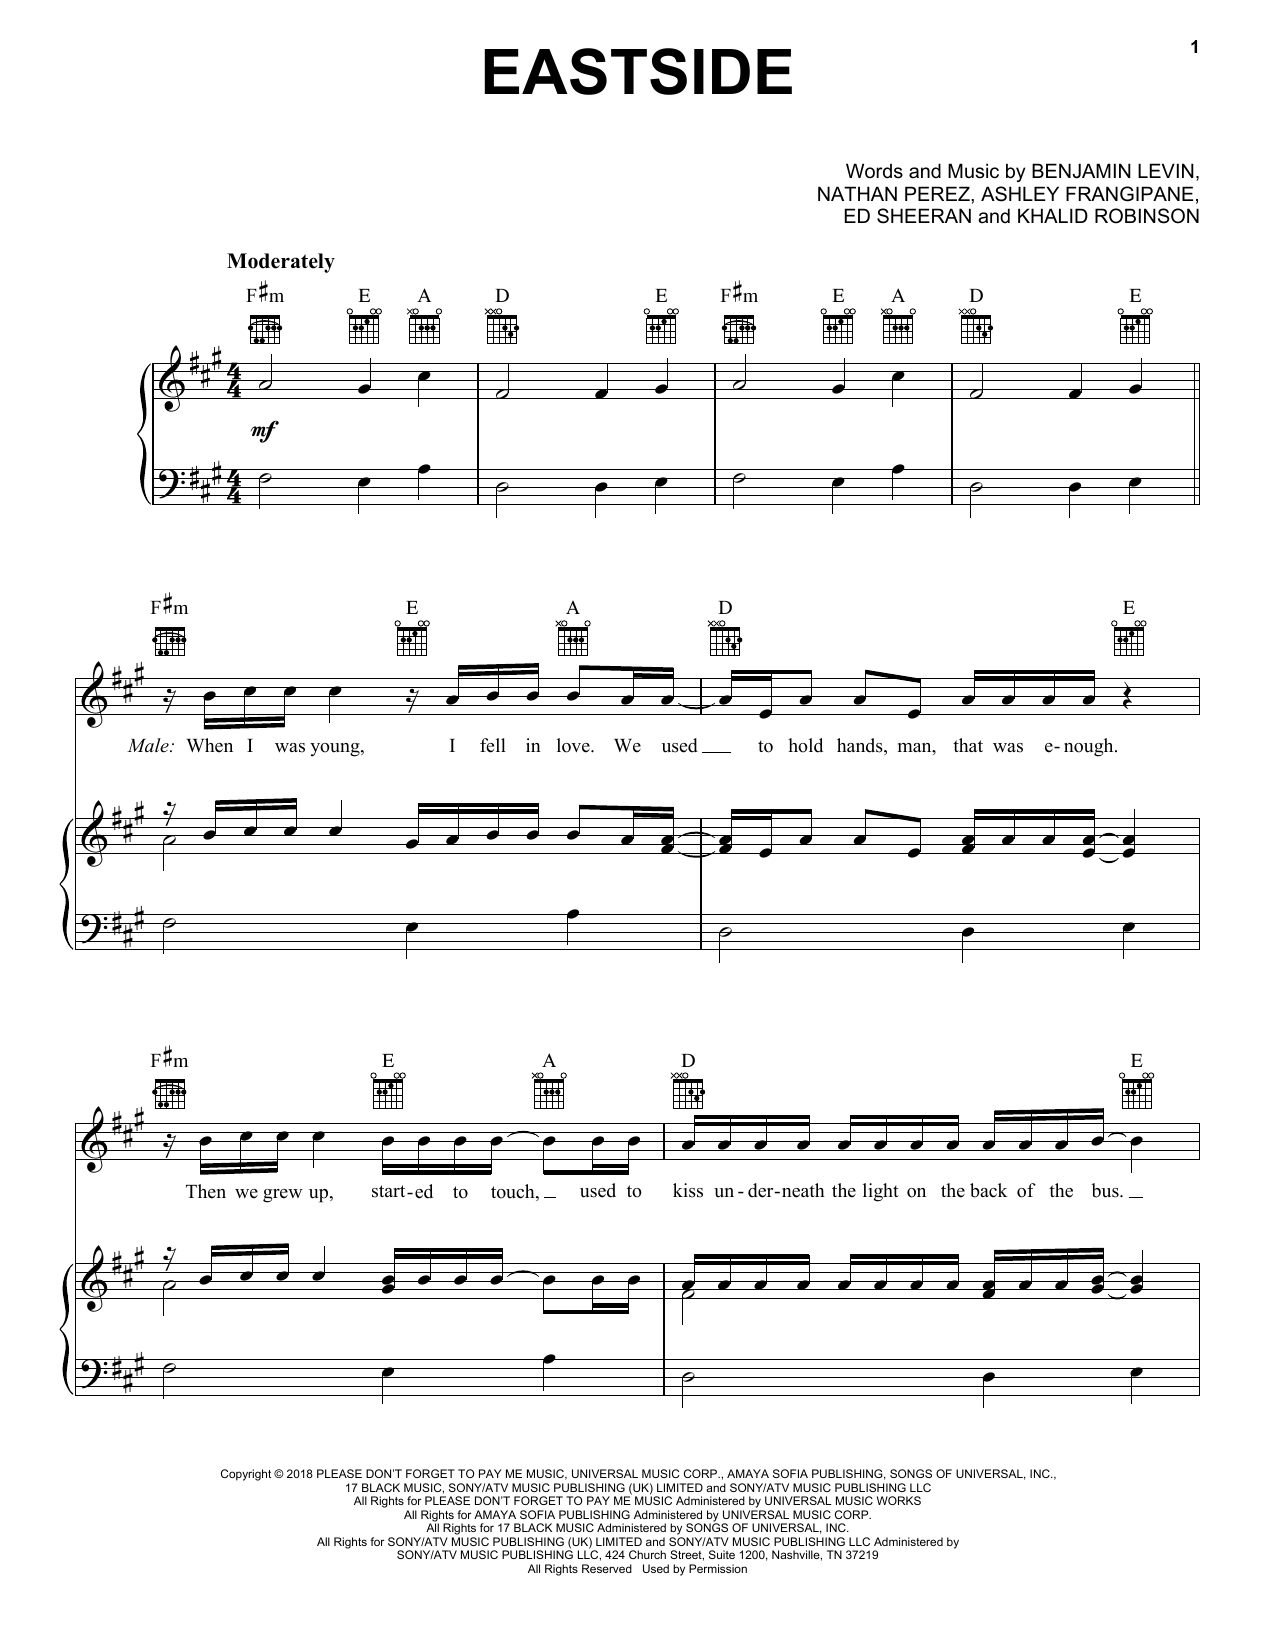 benny blanco, Halsey & Khalid Eastside Sheet Music Notes & Chords for Ukulele - Download or Print PDF